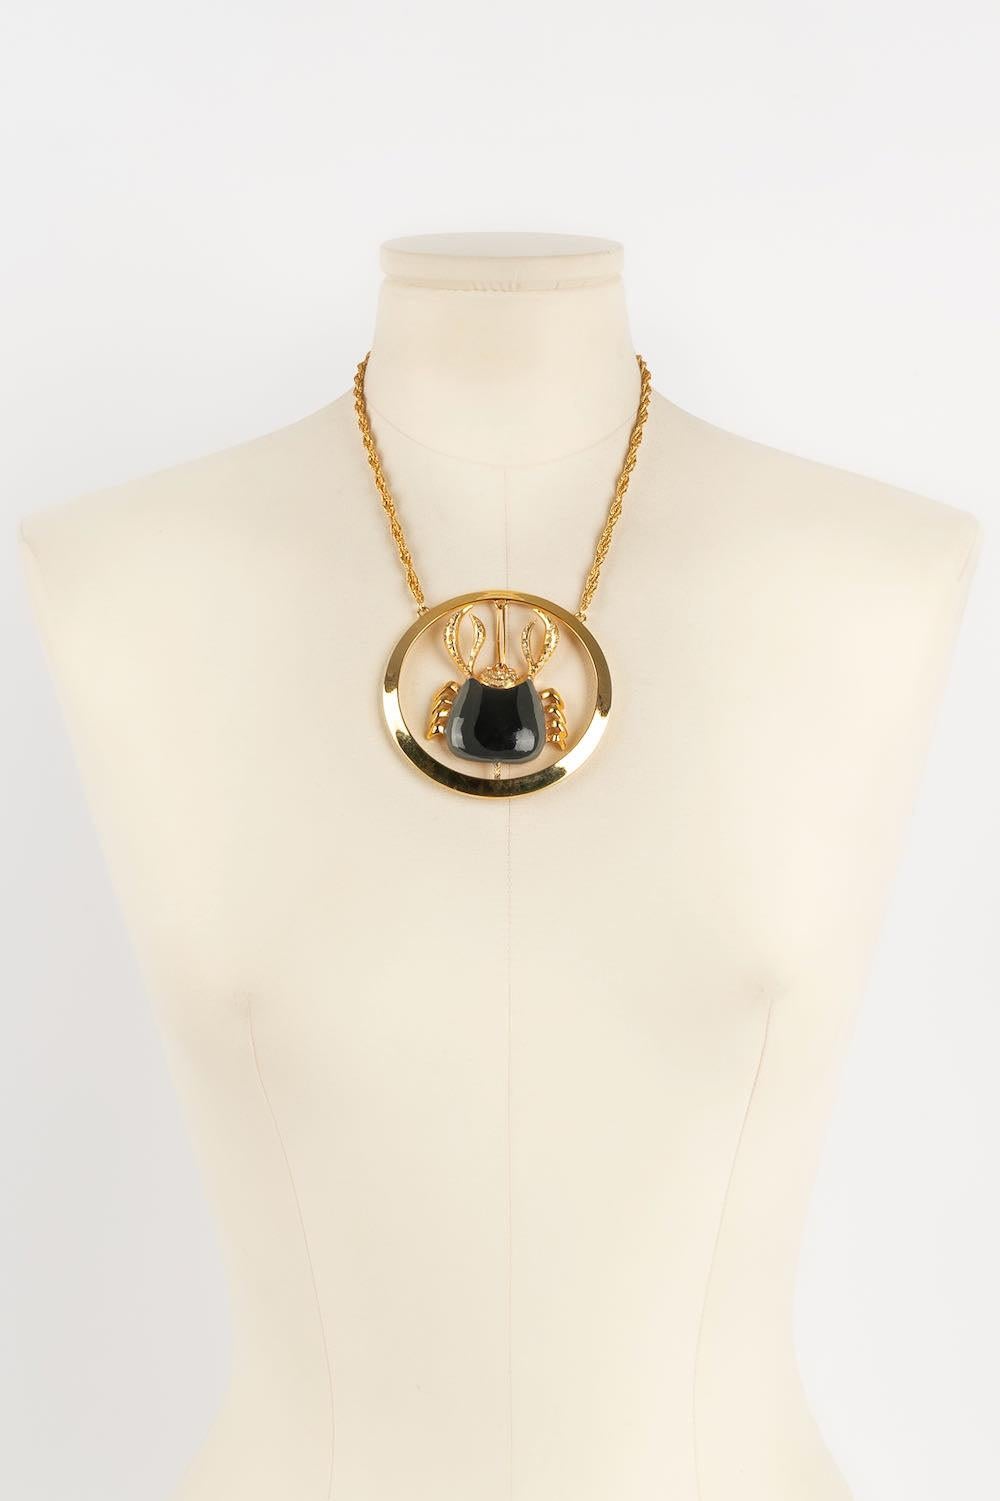 Pierre Cardin - Halskette aus goldenem Metall, Strass und Emaille.

Zusätzliche Informationen: 

Abmessungen: 
Länge: 44 cm

Bedingung: 
Sehr guter Zustand

Verkäufer-Referenznummer: BC1